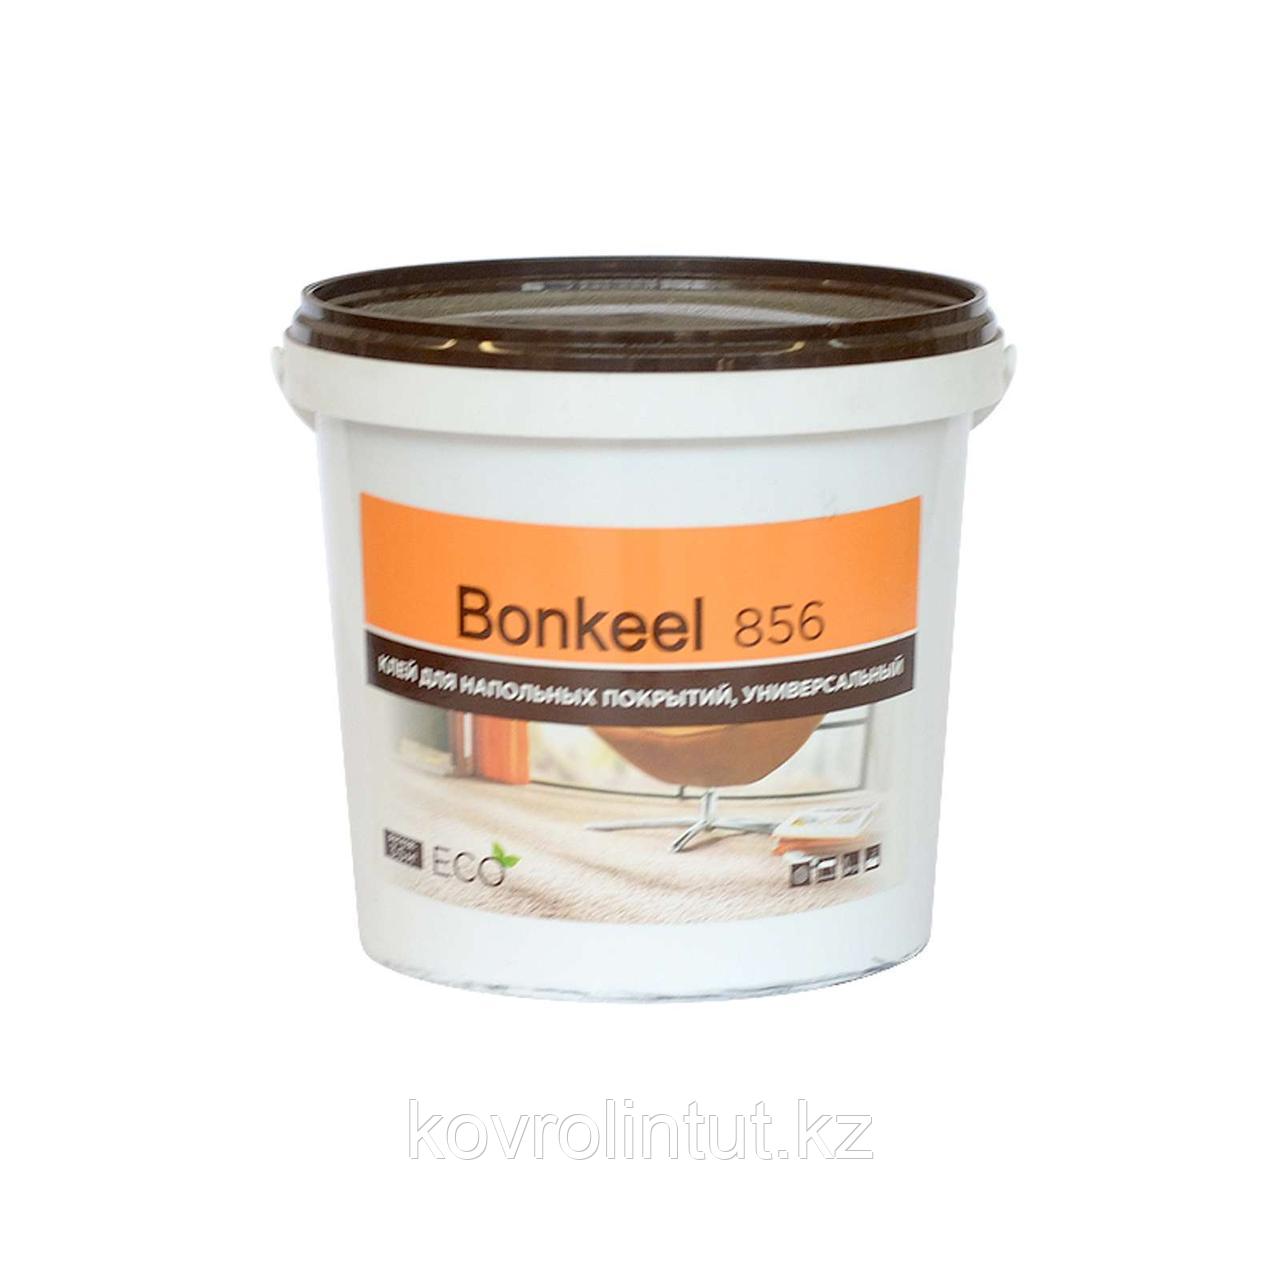 Клей Bonkeel 856 для линолеума и ковролина, 1,3 кг